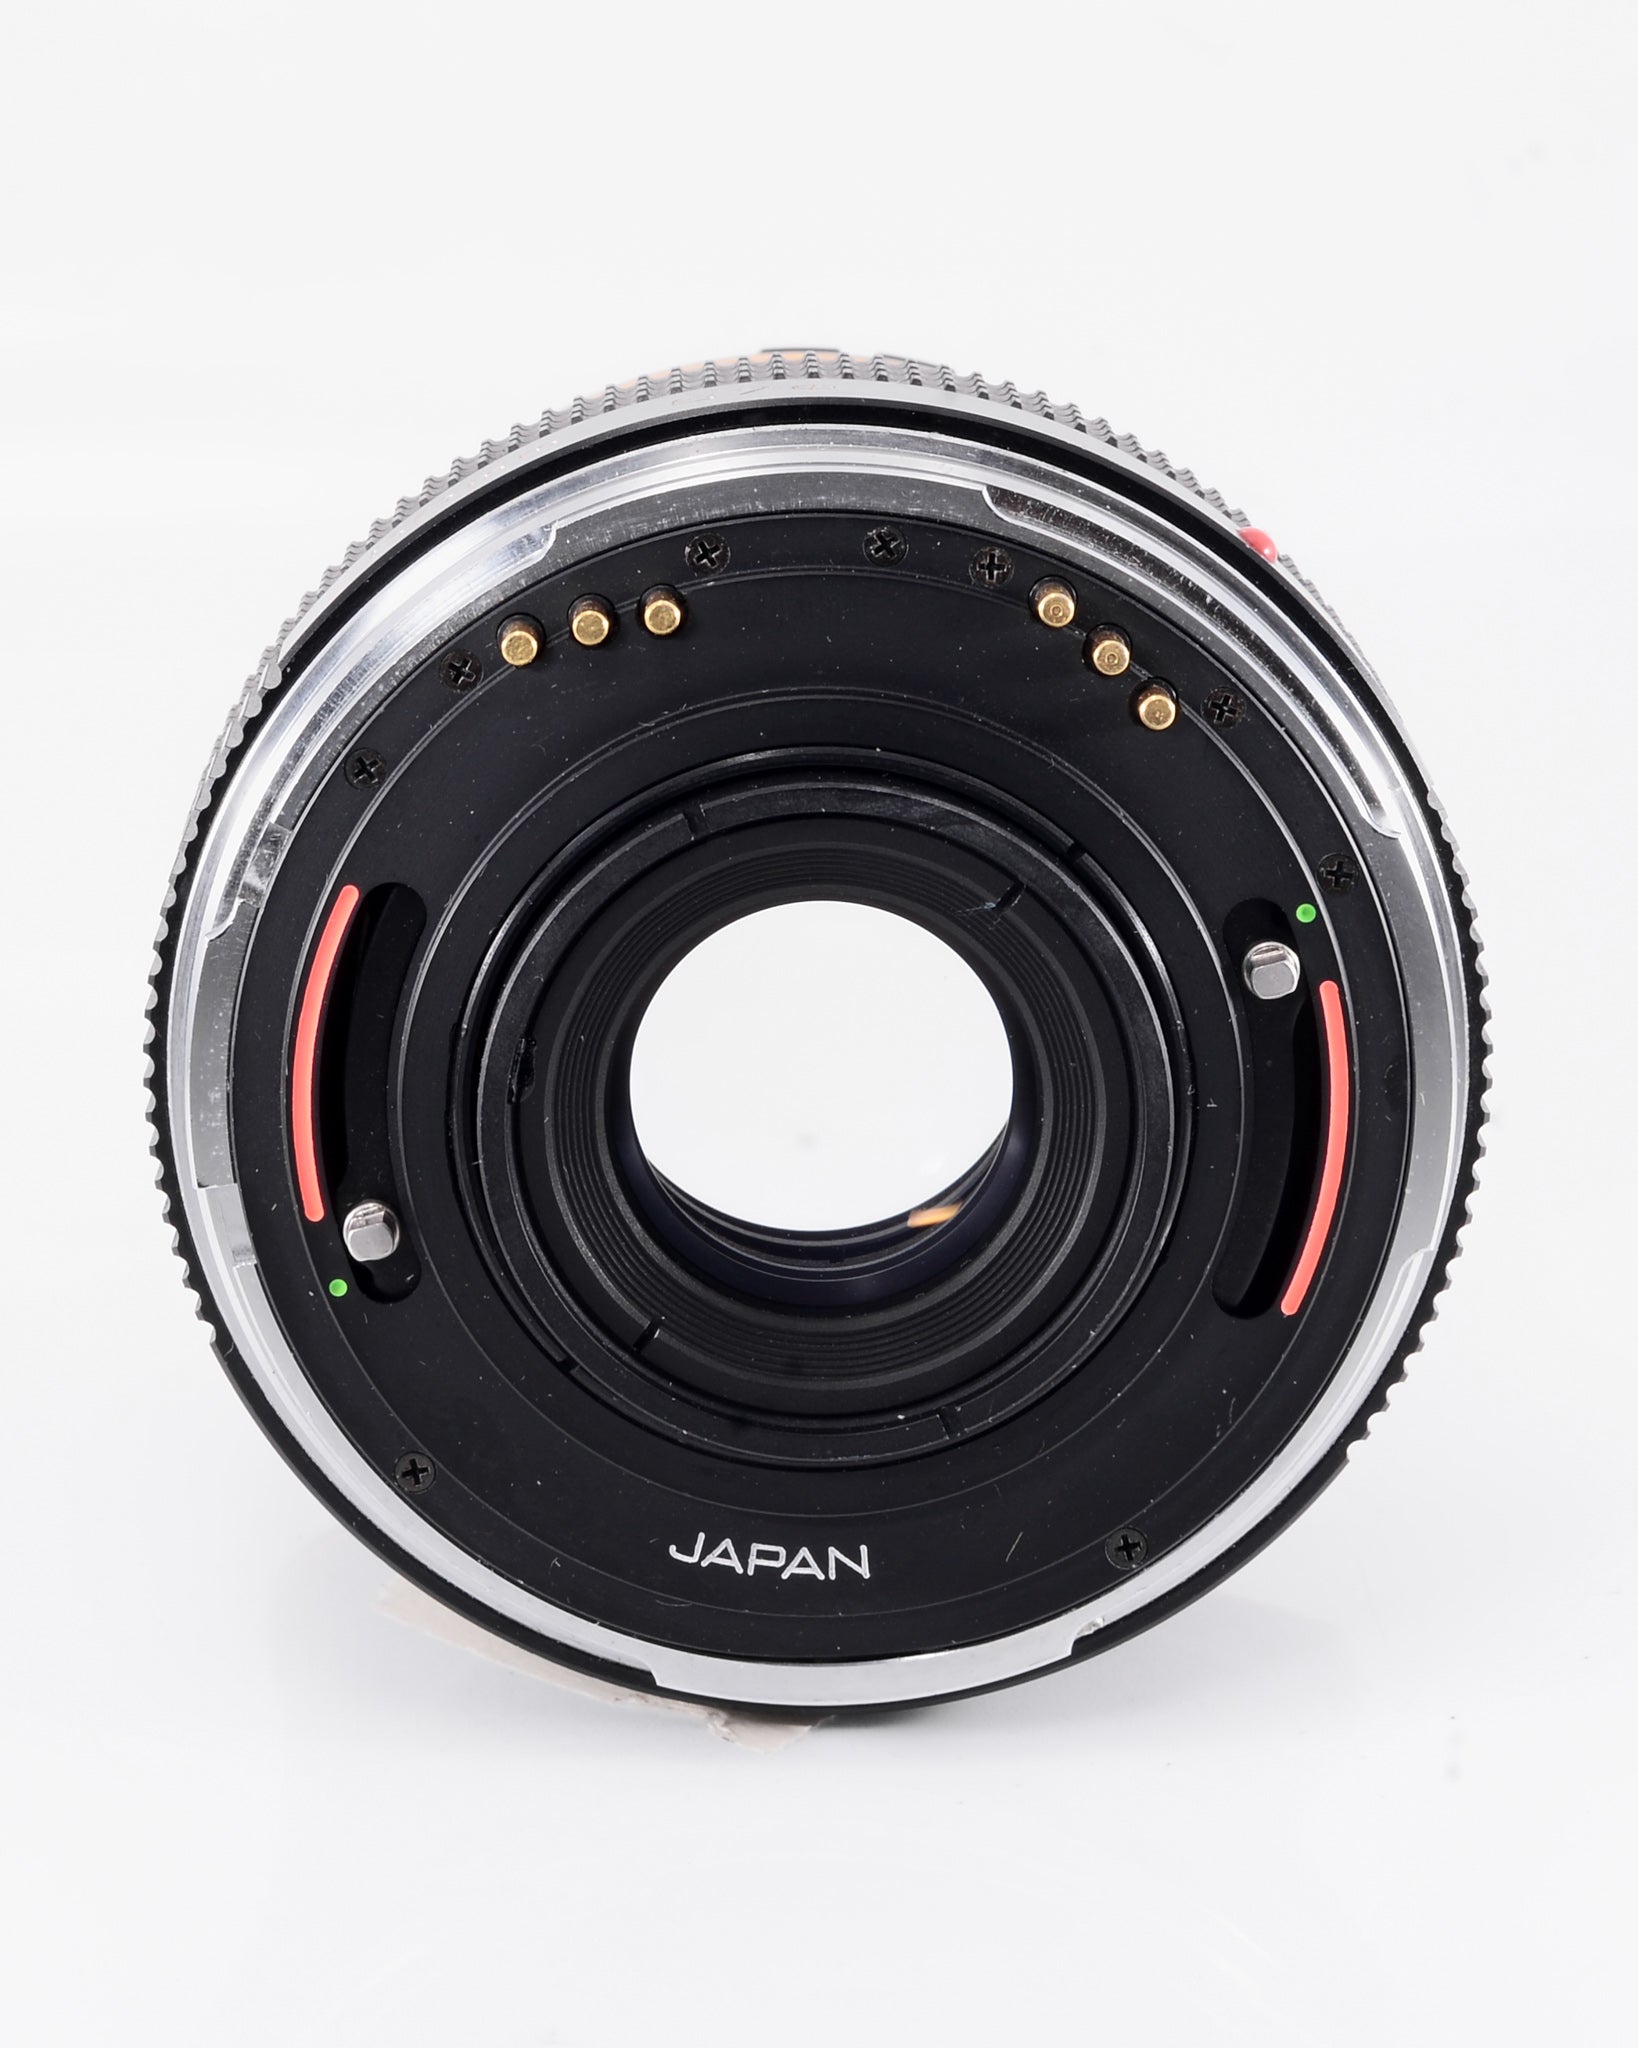 Zenzanon-S 50mm f3.5 Bronica SQ lens